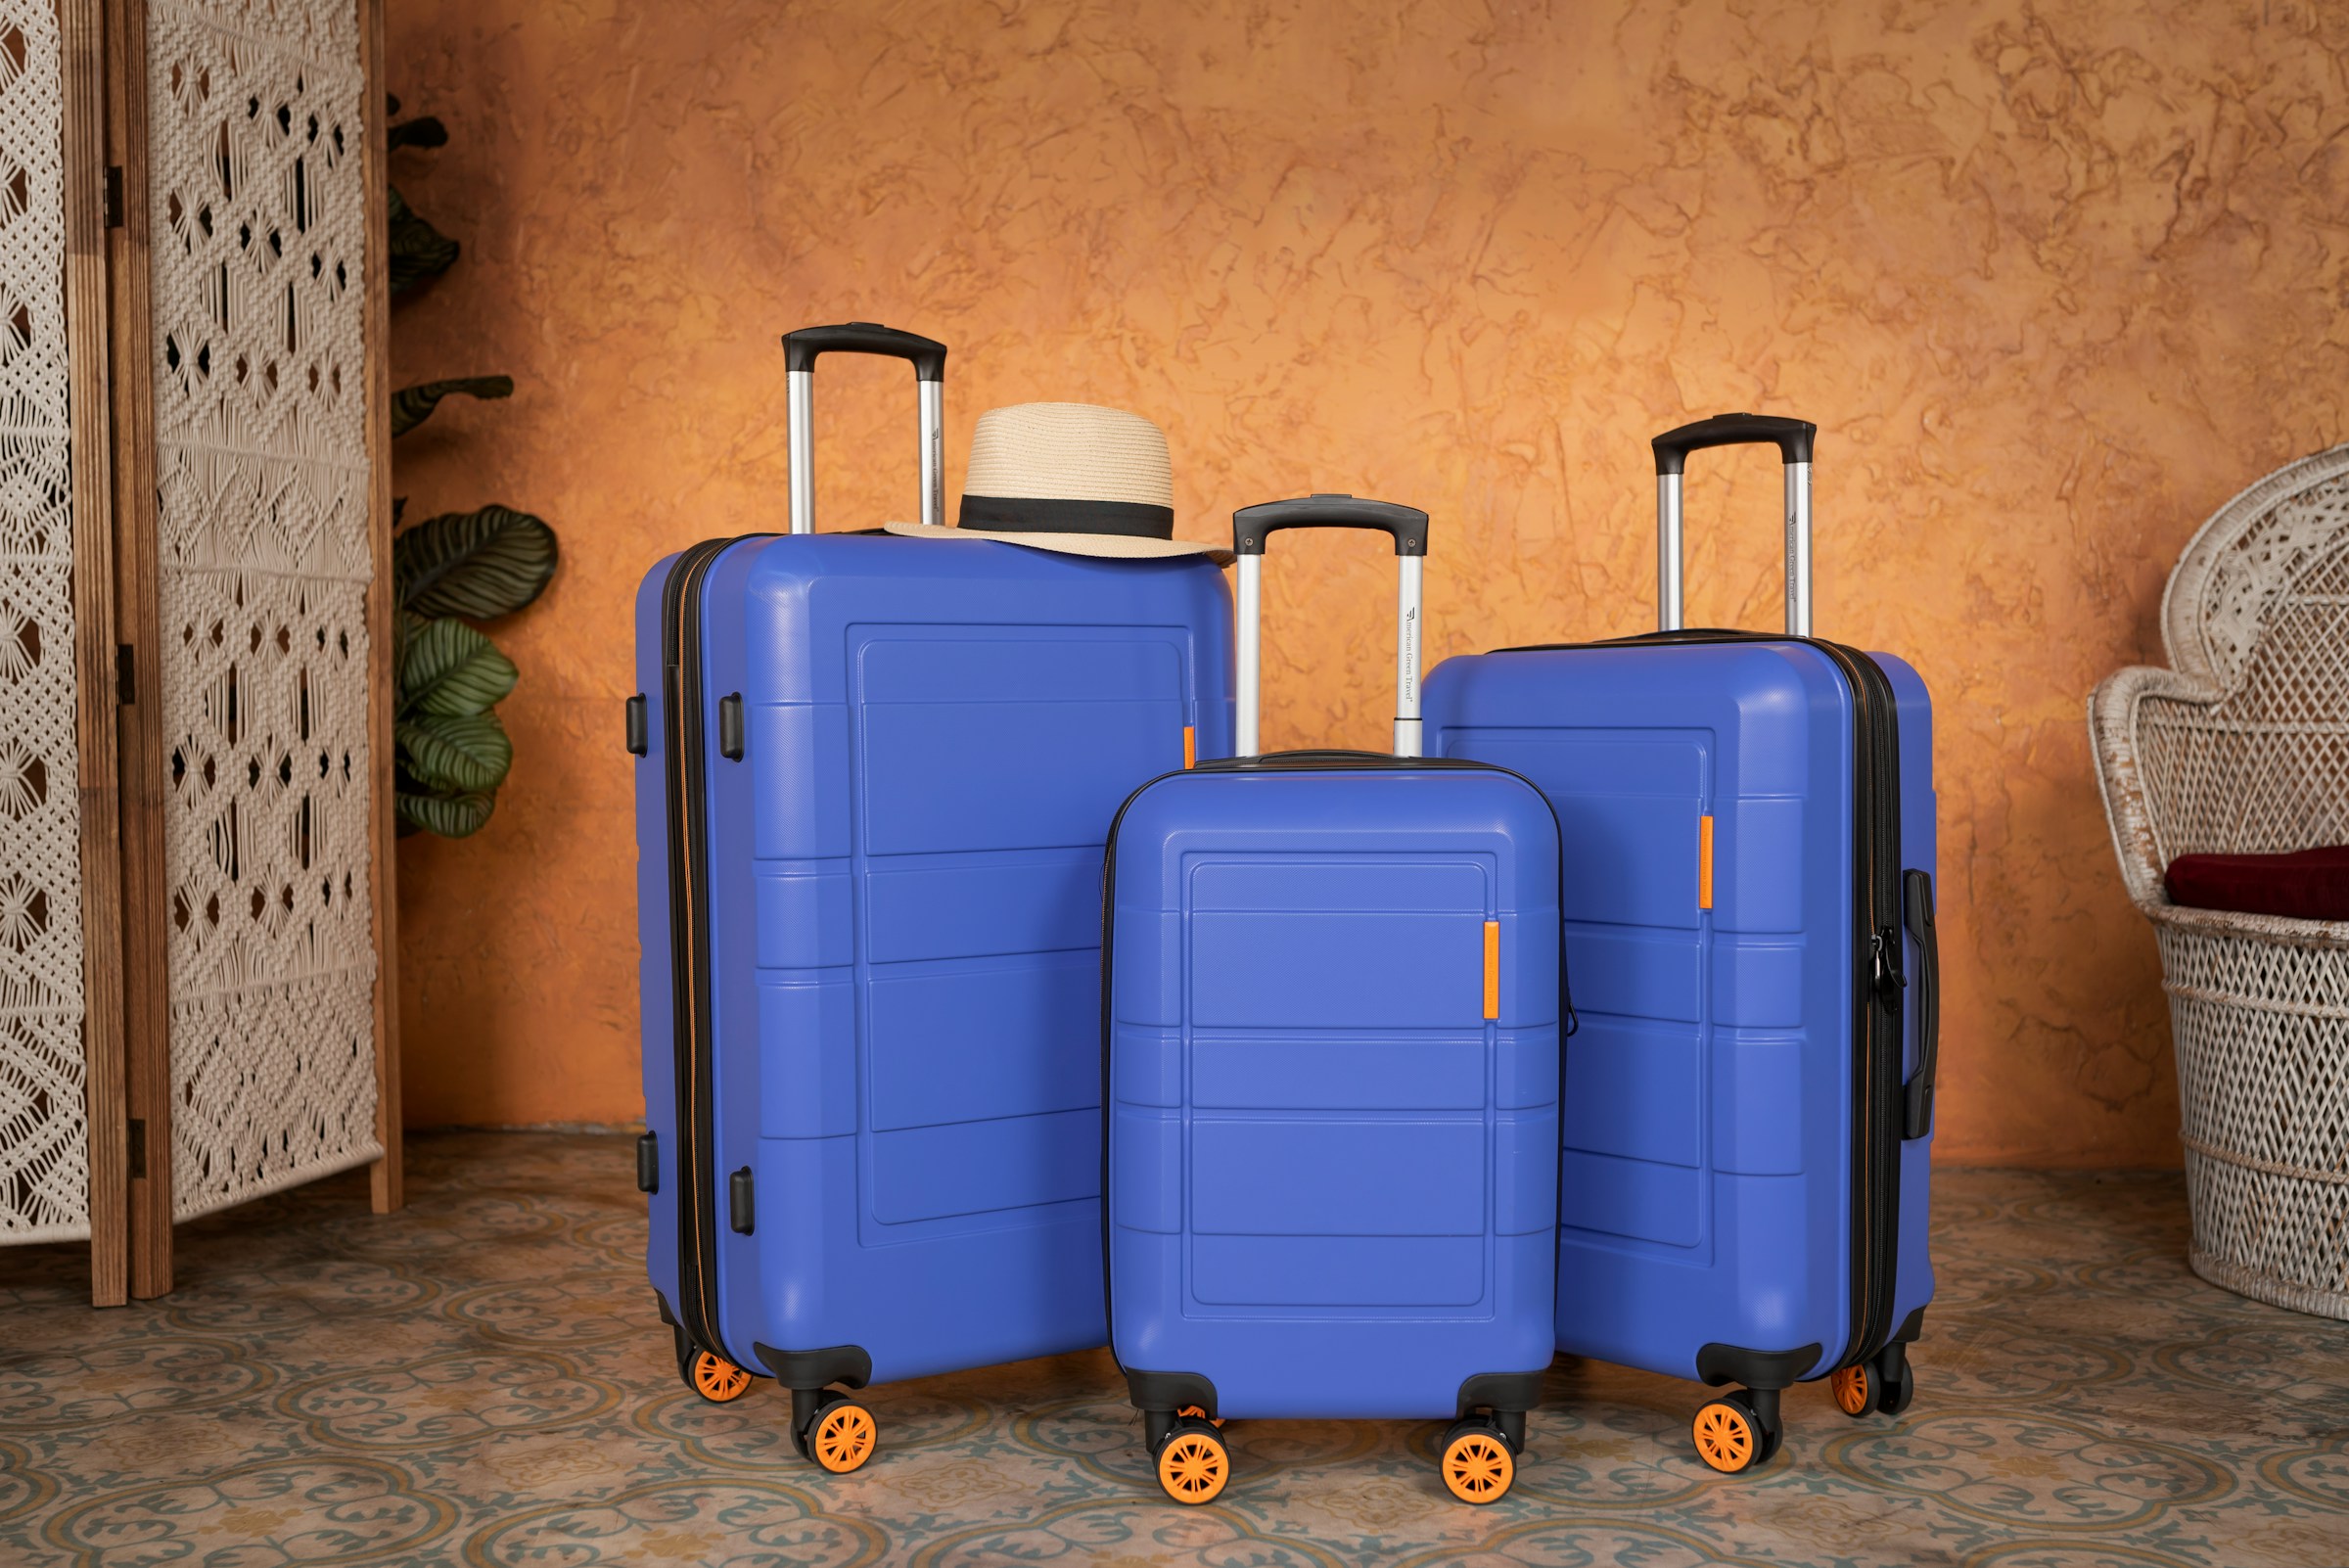 Blaue Koffer aufgereiht | Quelle: Unsplash